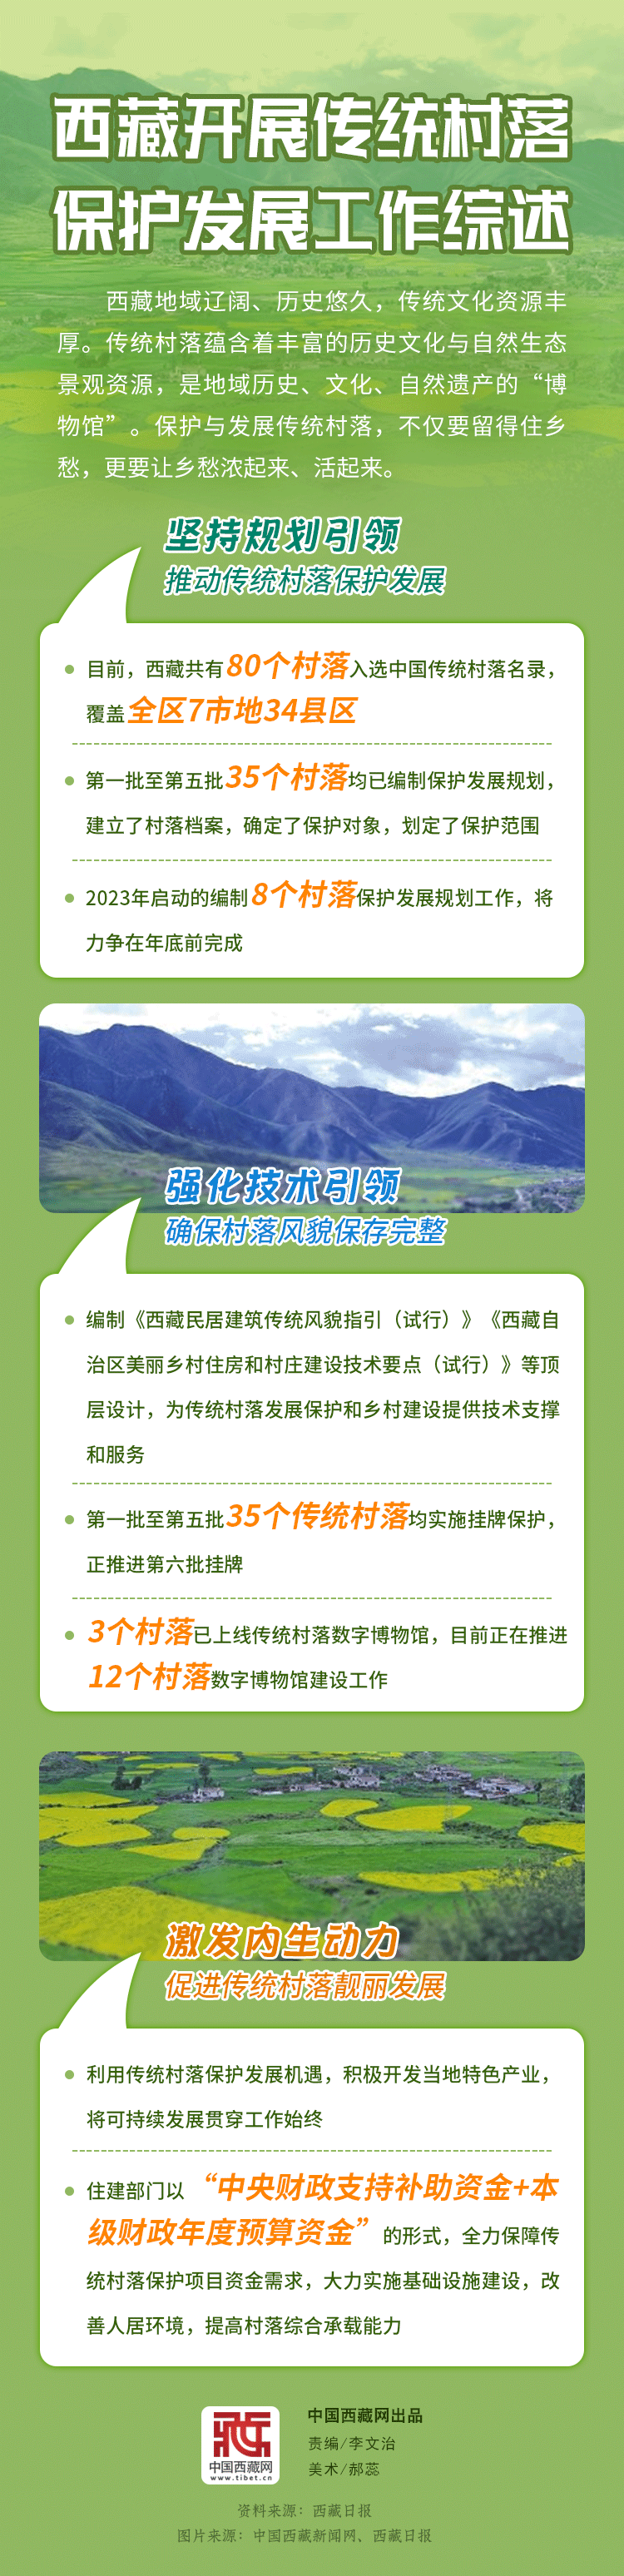 图解丨西藏开展传统村落保护发展工作综述